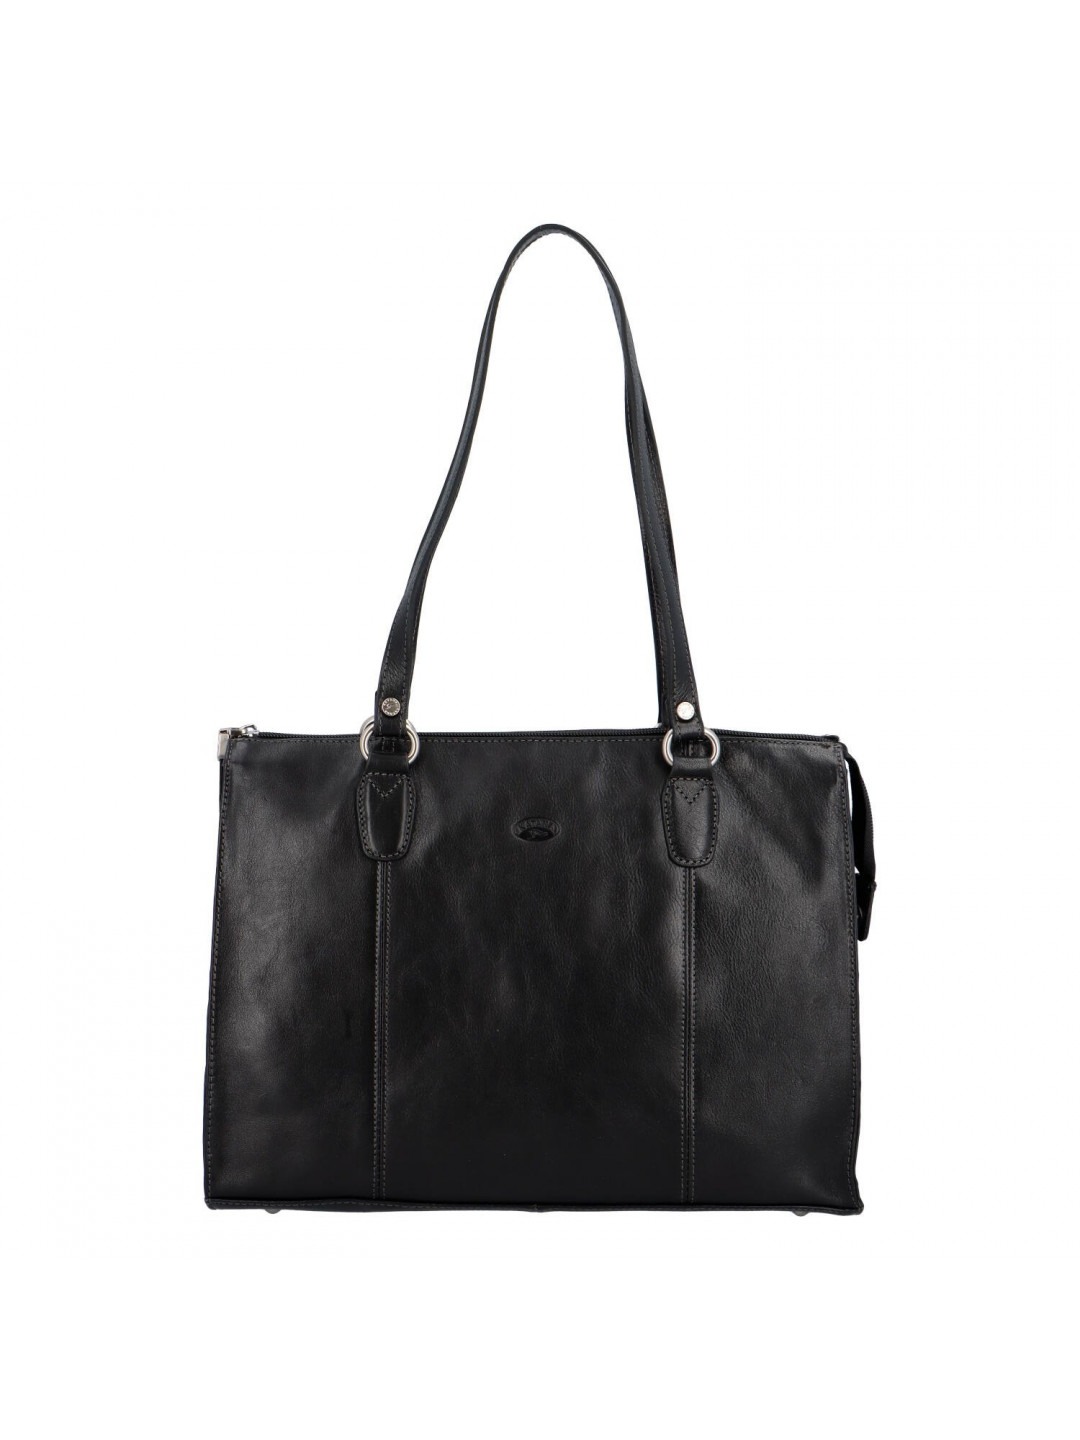 Luxusní dámská kožená kabelka Katana French lady černá